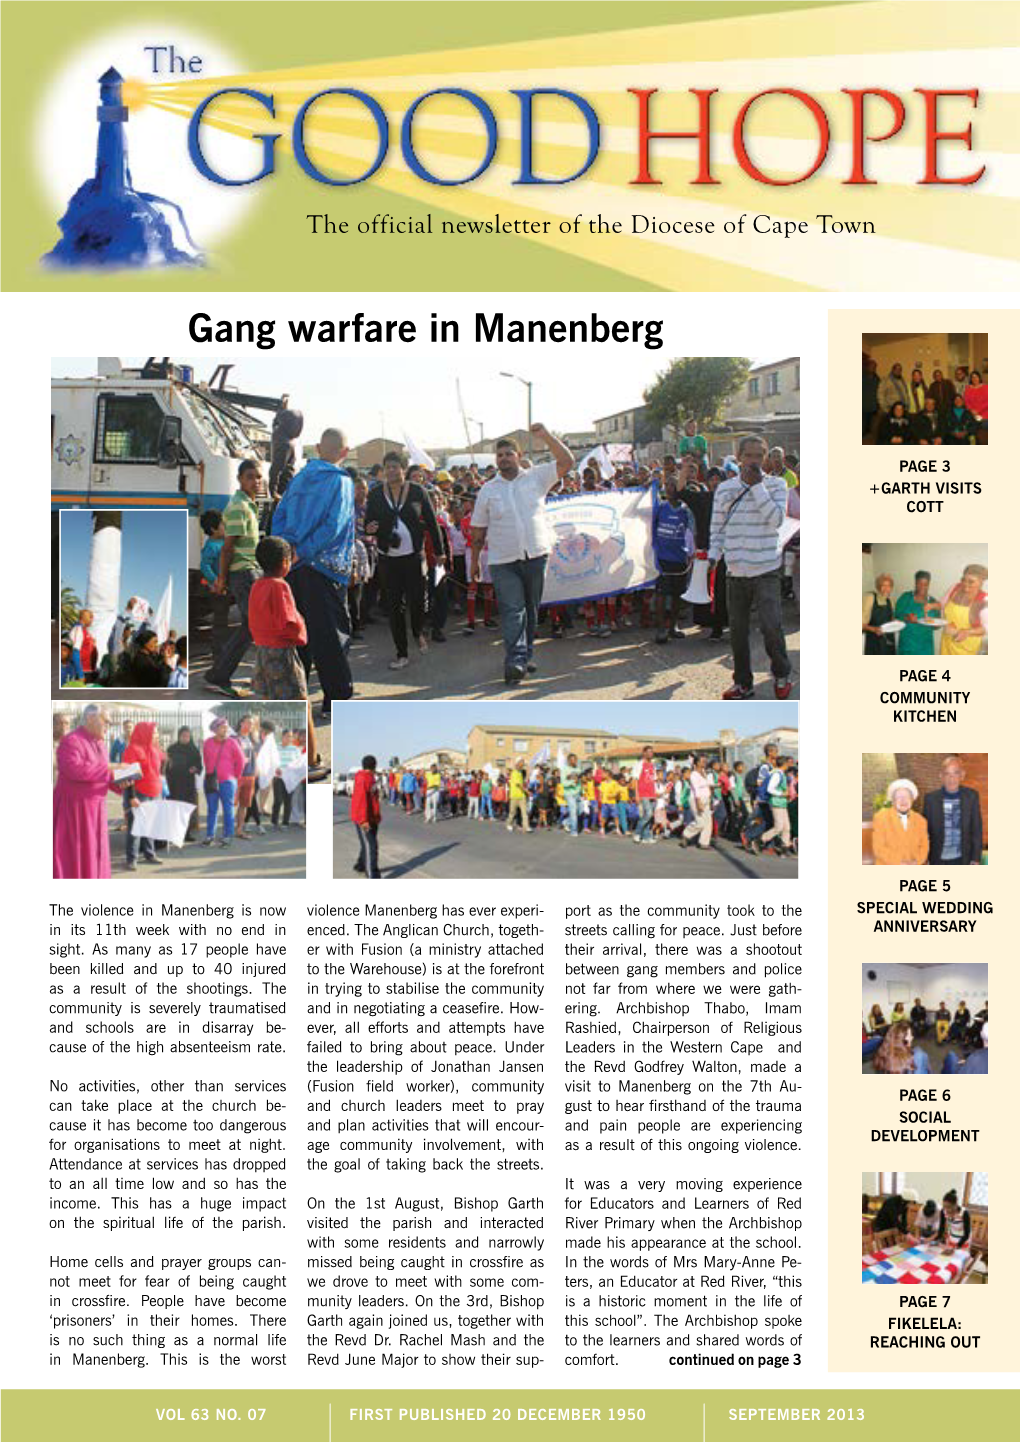 Gang Warfare in Manenberg